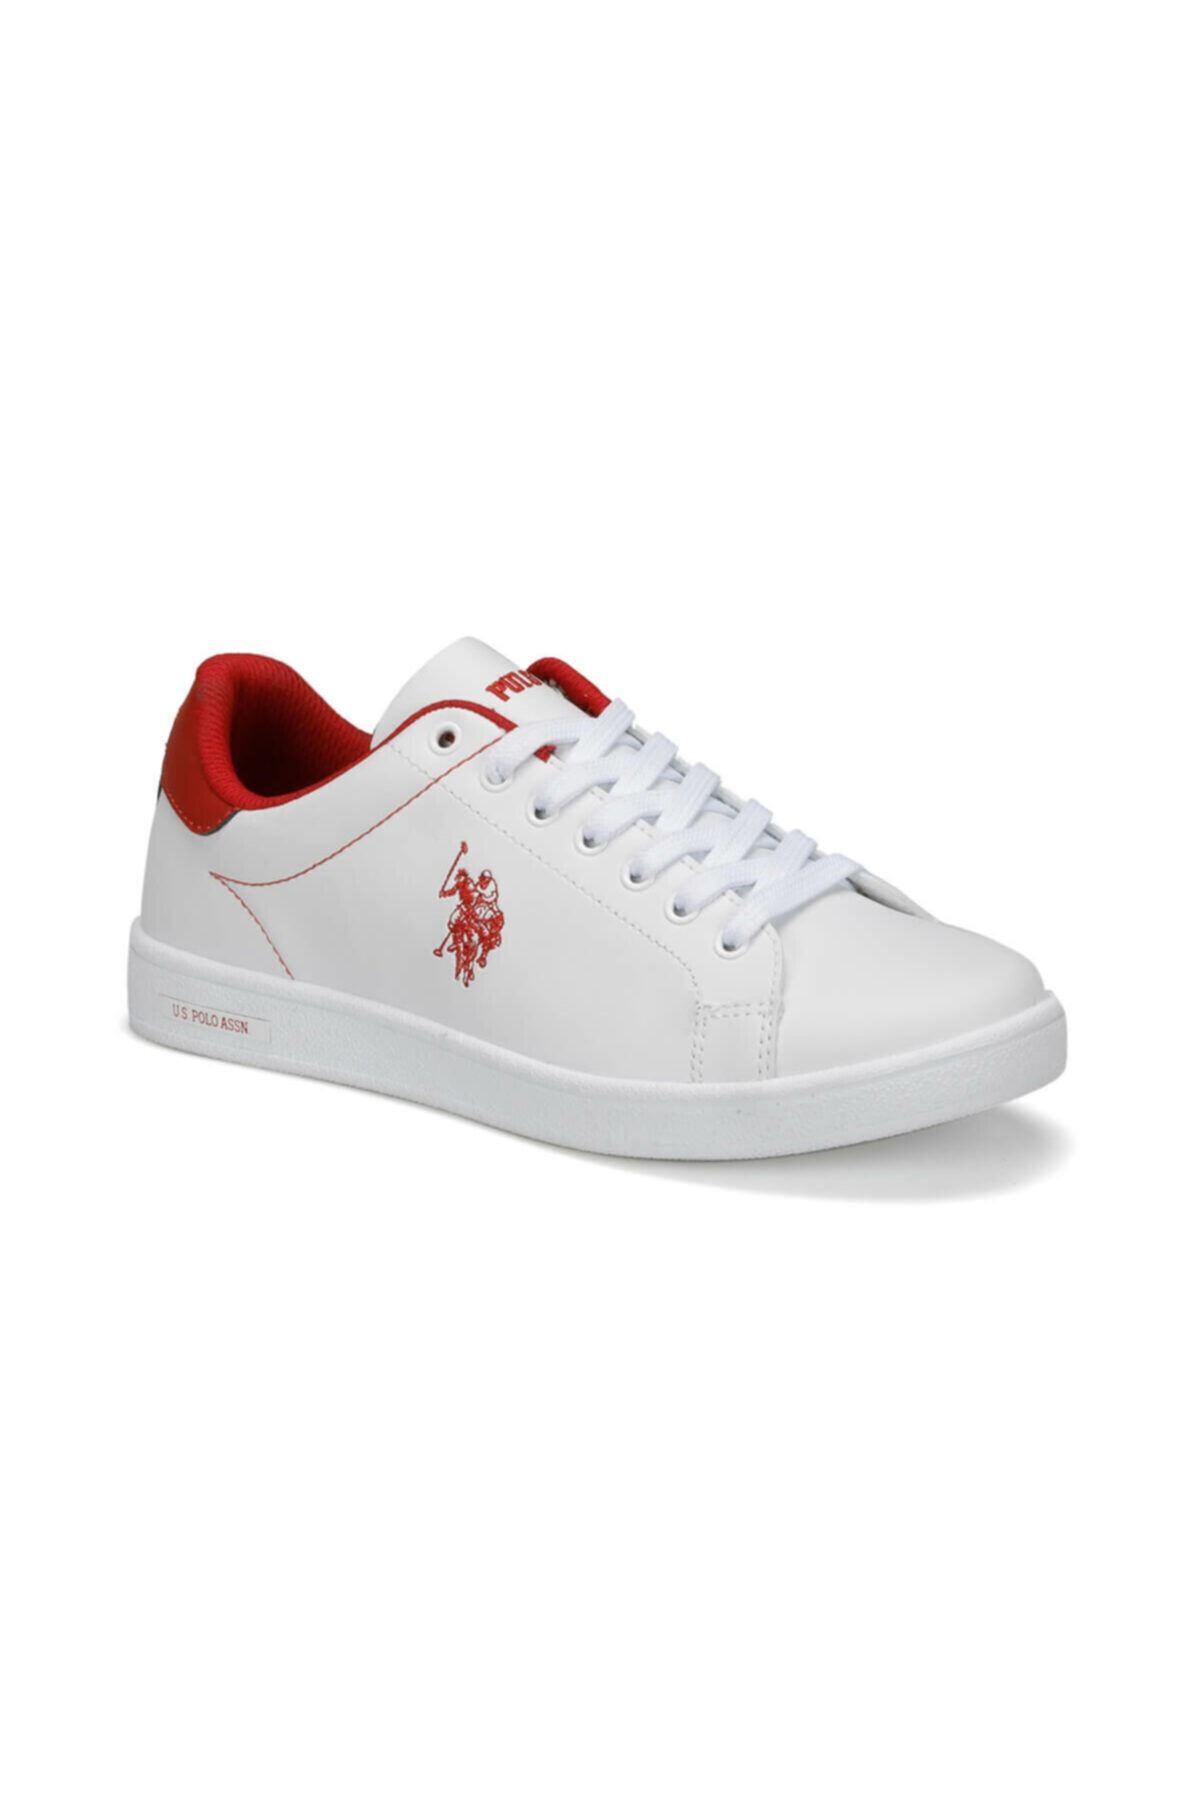 U.S. Polo Assn. STEVE 9PR Beyaz Kadın Sneaker Ayakkabı 100418138